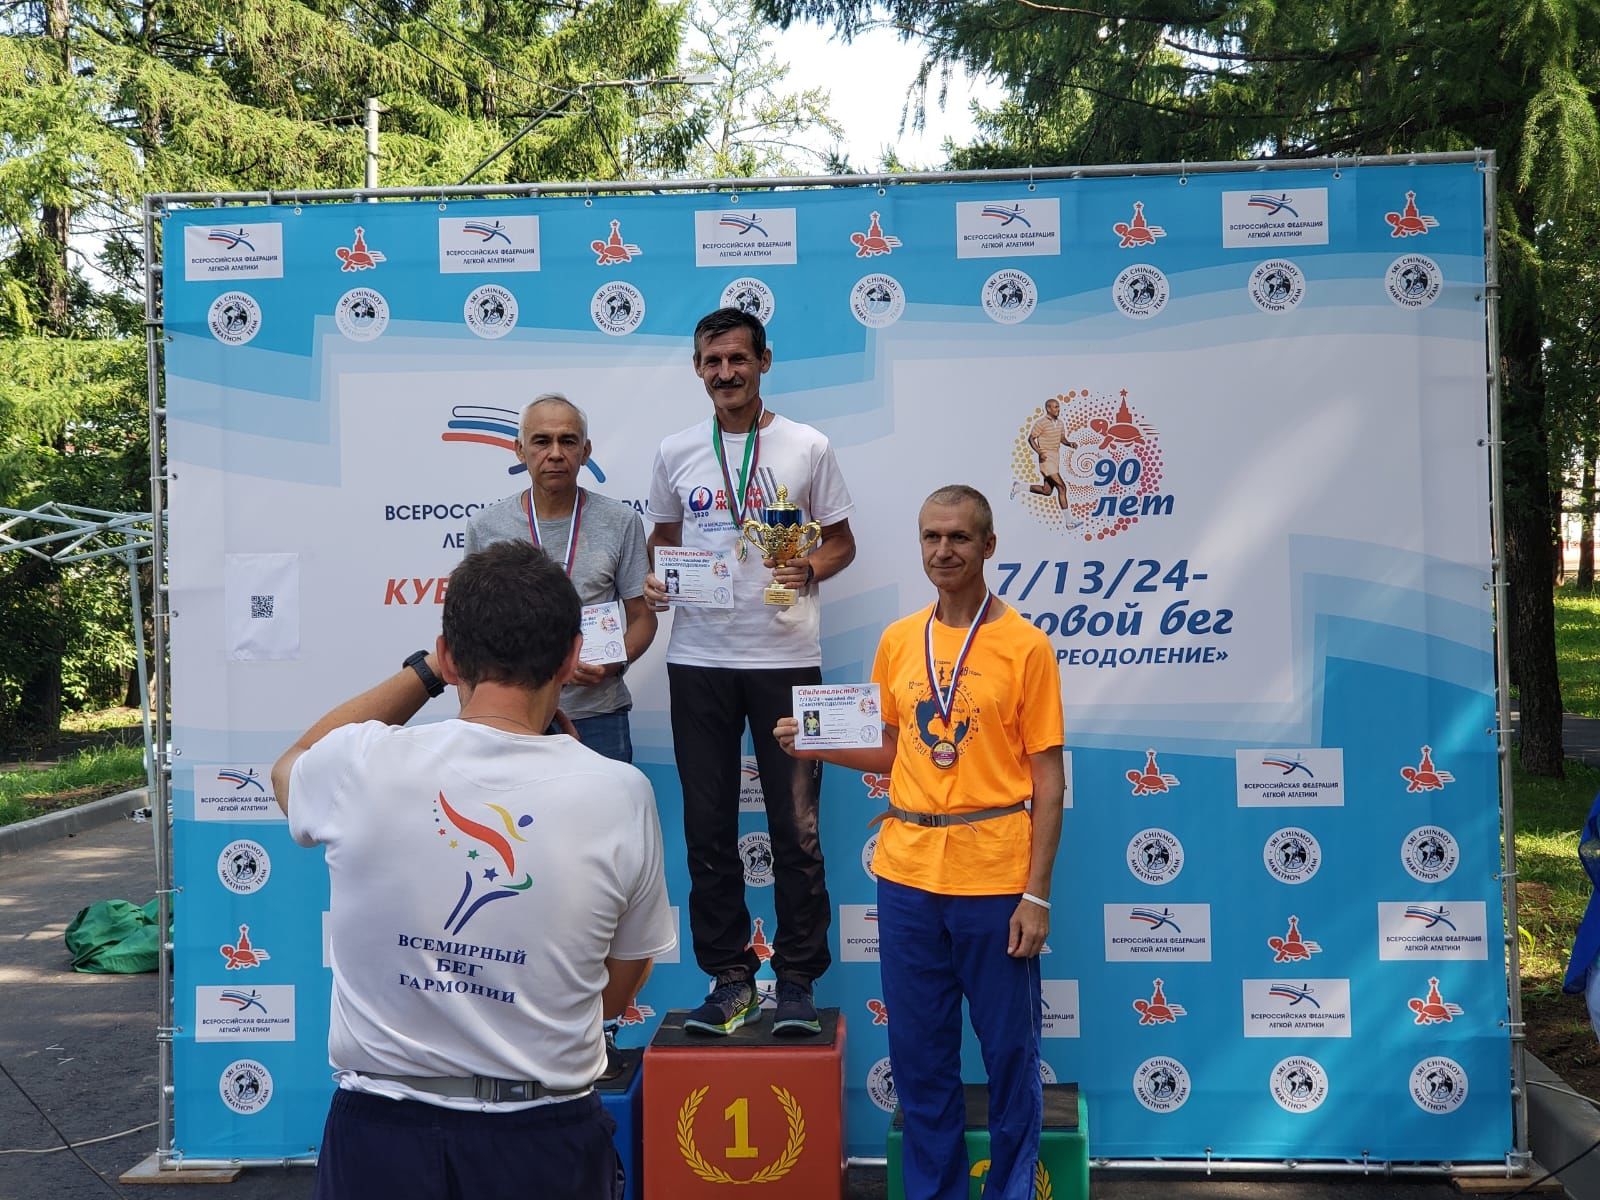 Бугульминский учитель физкультуры лицея № 2 участвовал в суточном забеге и стал лучшим в своей возрастной категории